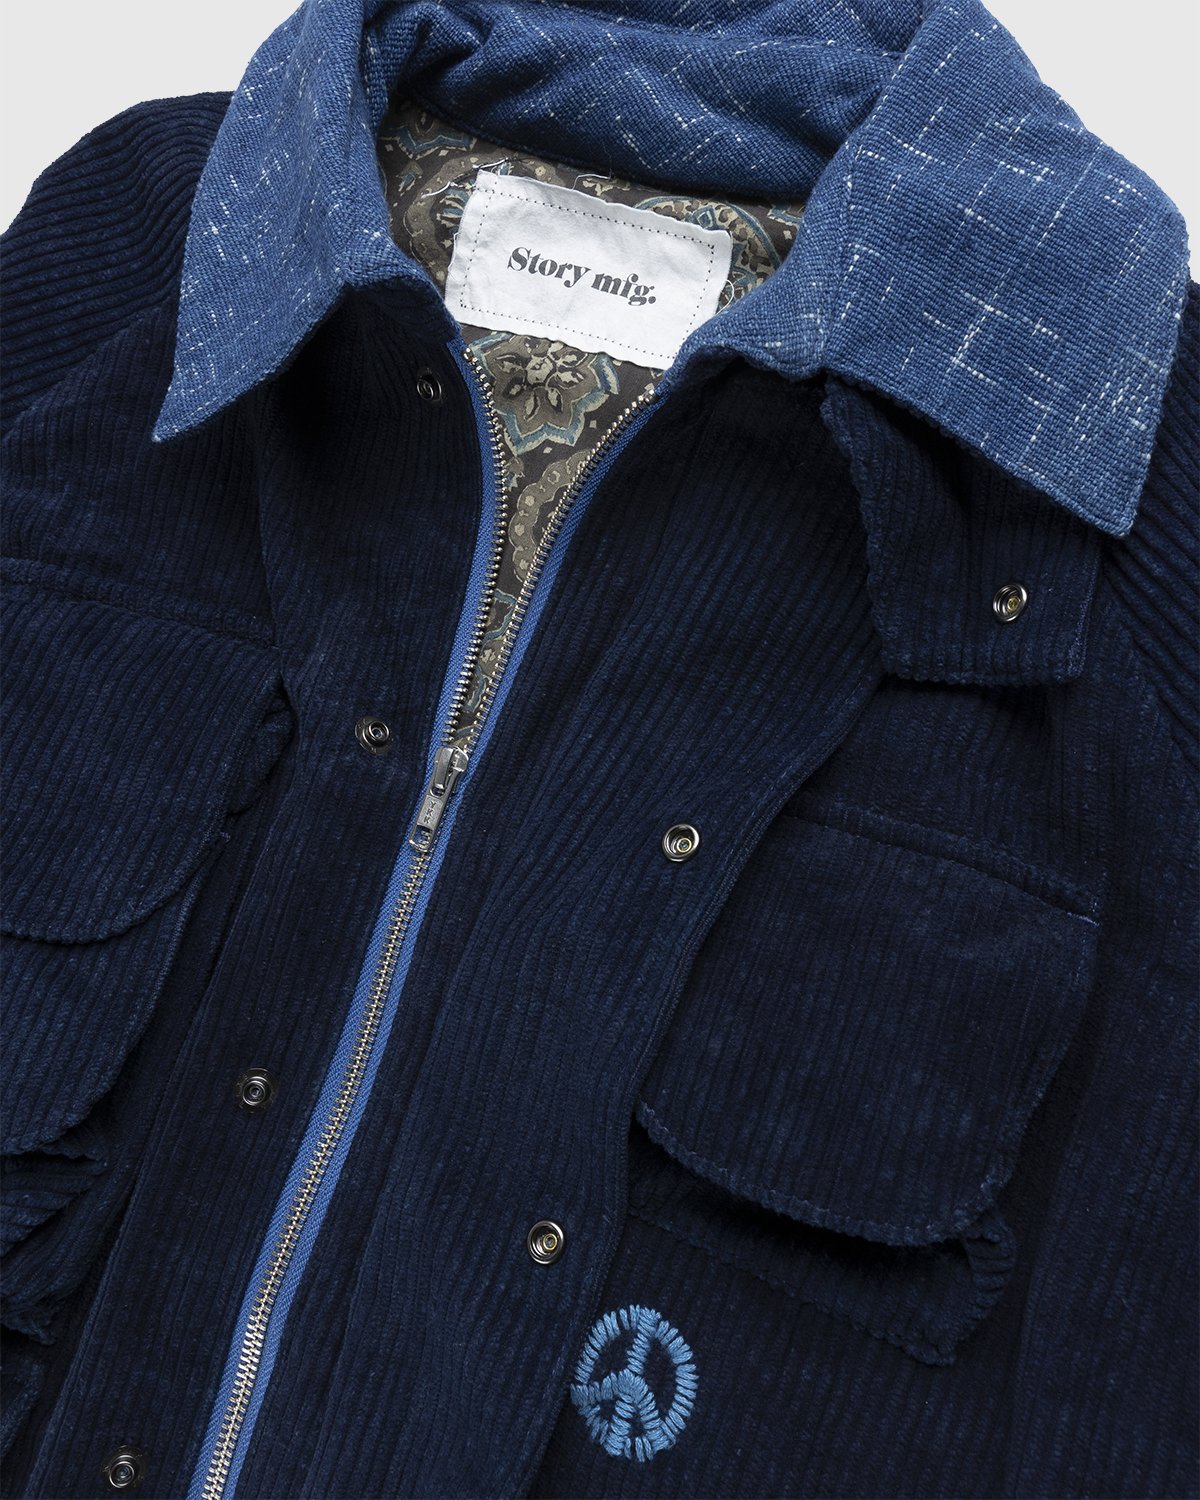 Story mfg. - Rambler Jacket Deep Indigo Corduroy - Clothing - Blue - Image 3